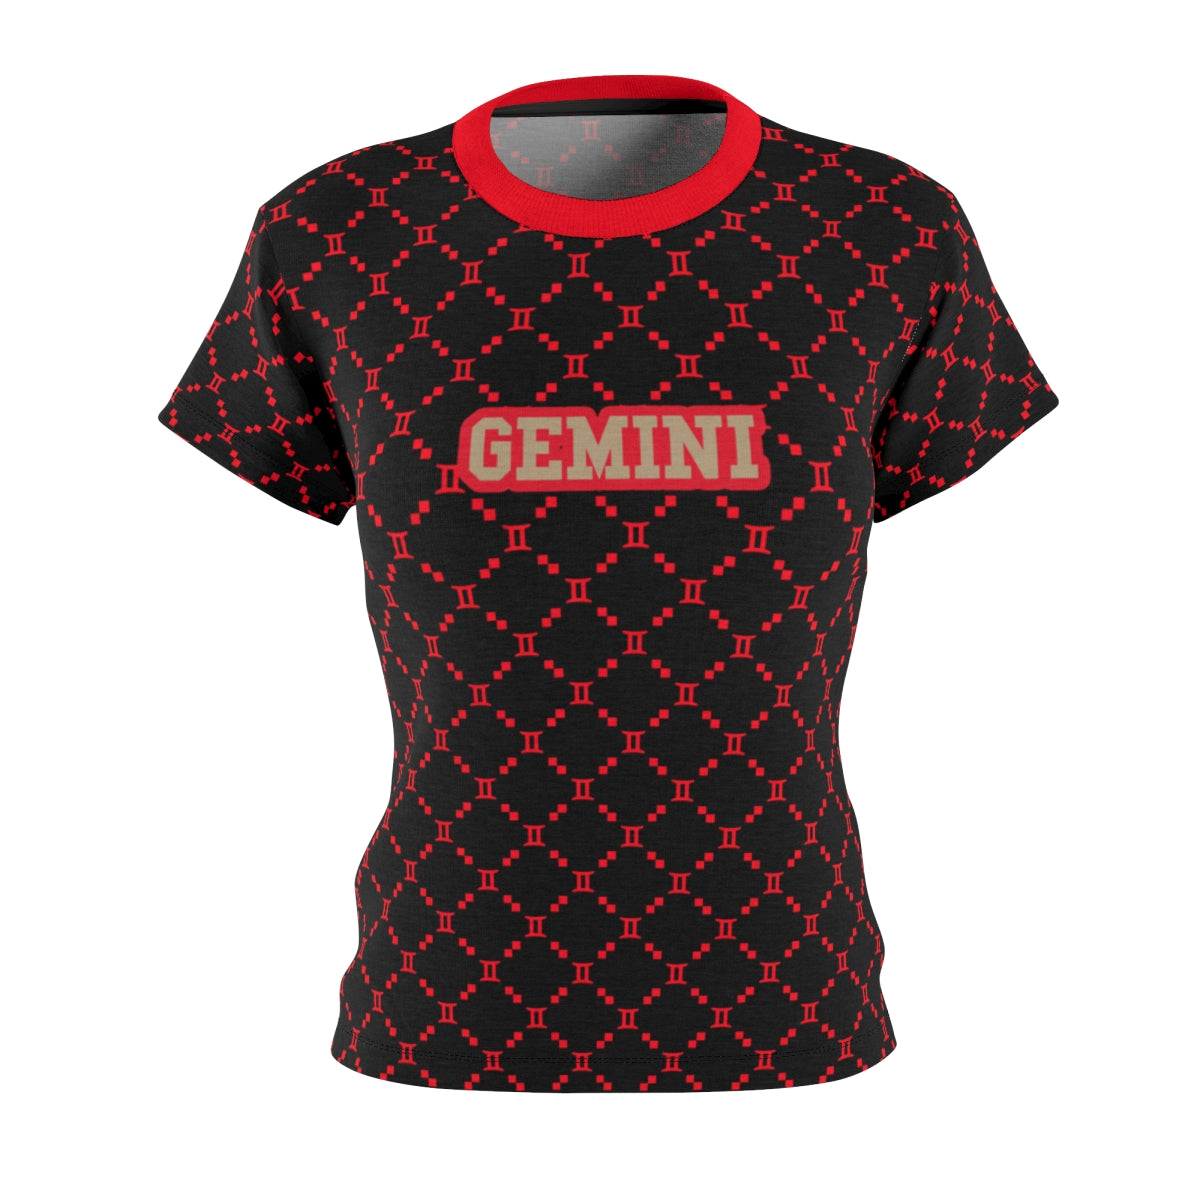 Gemini G-Style Shirt - Red